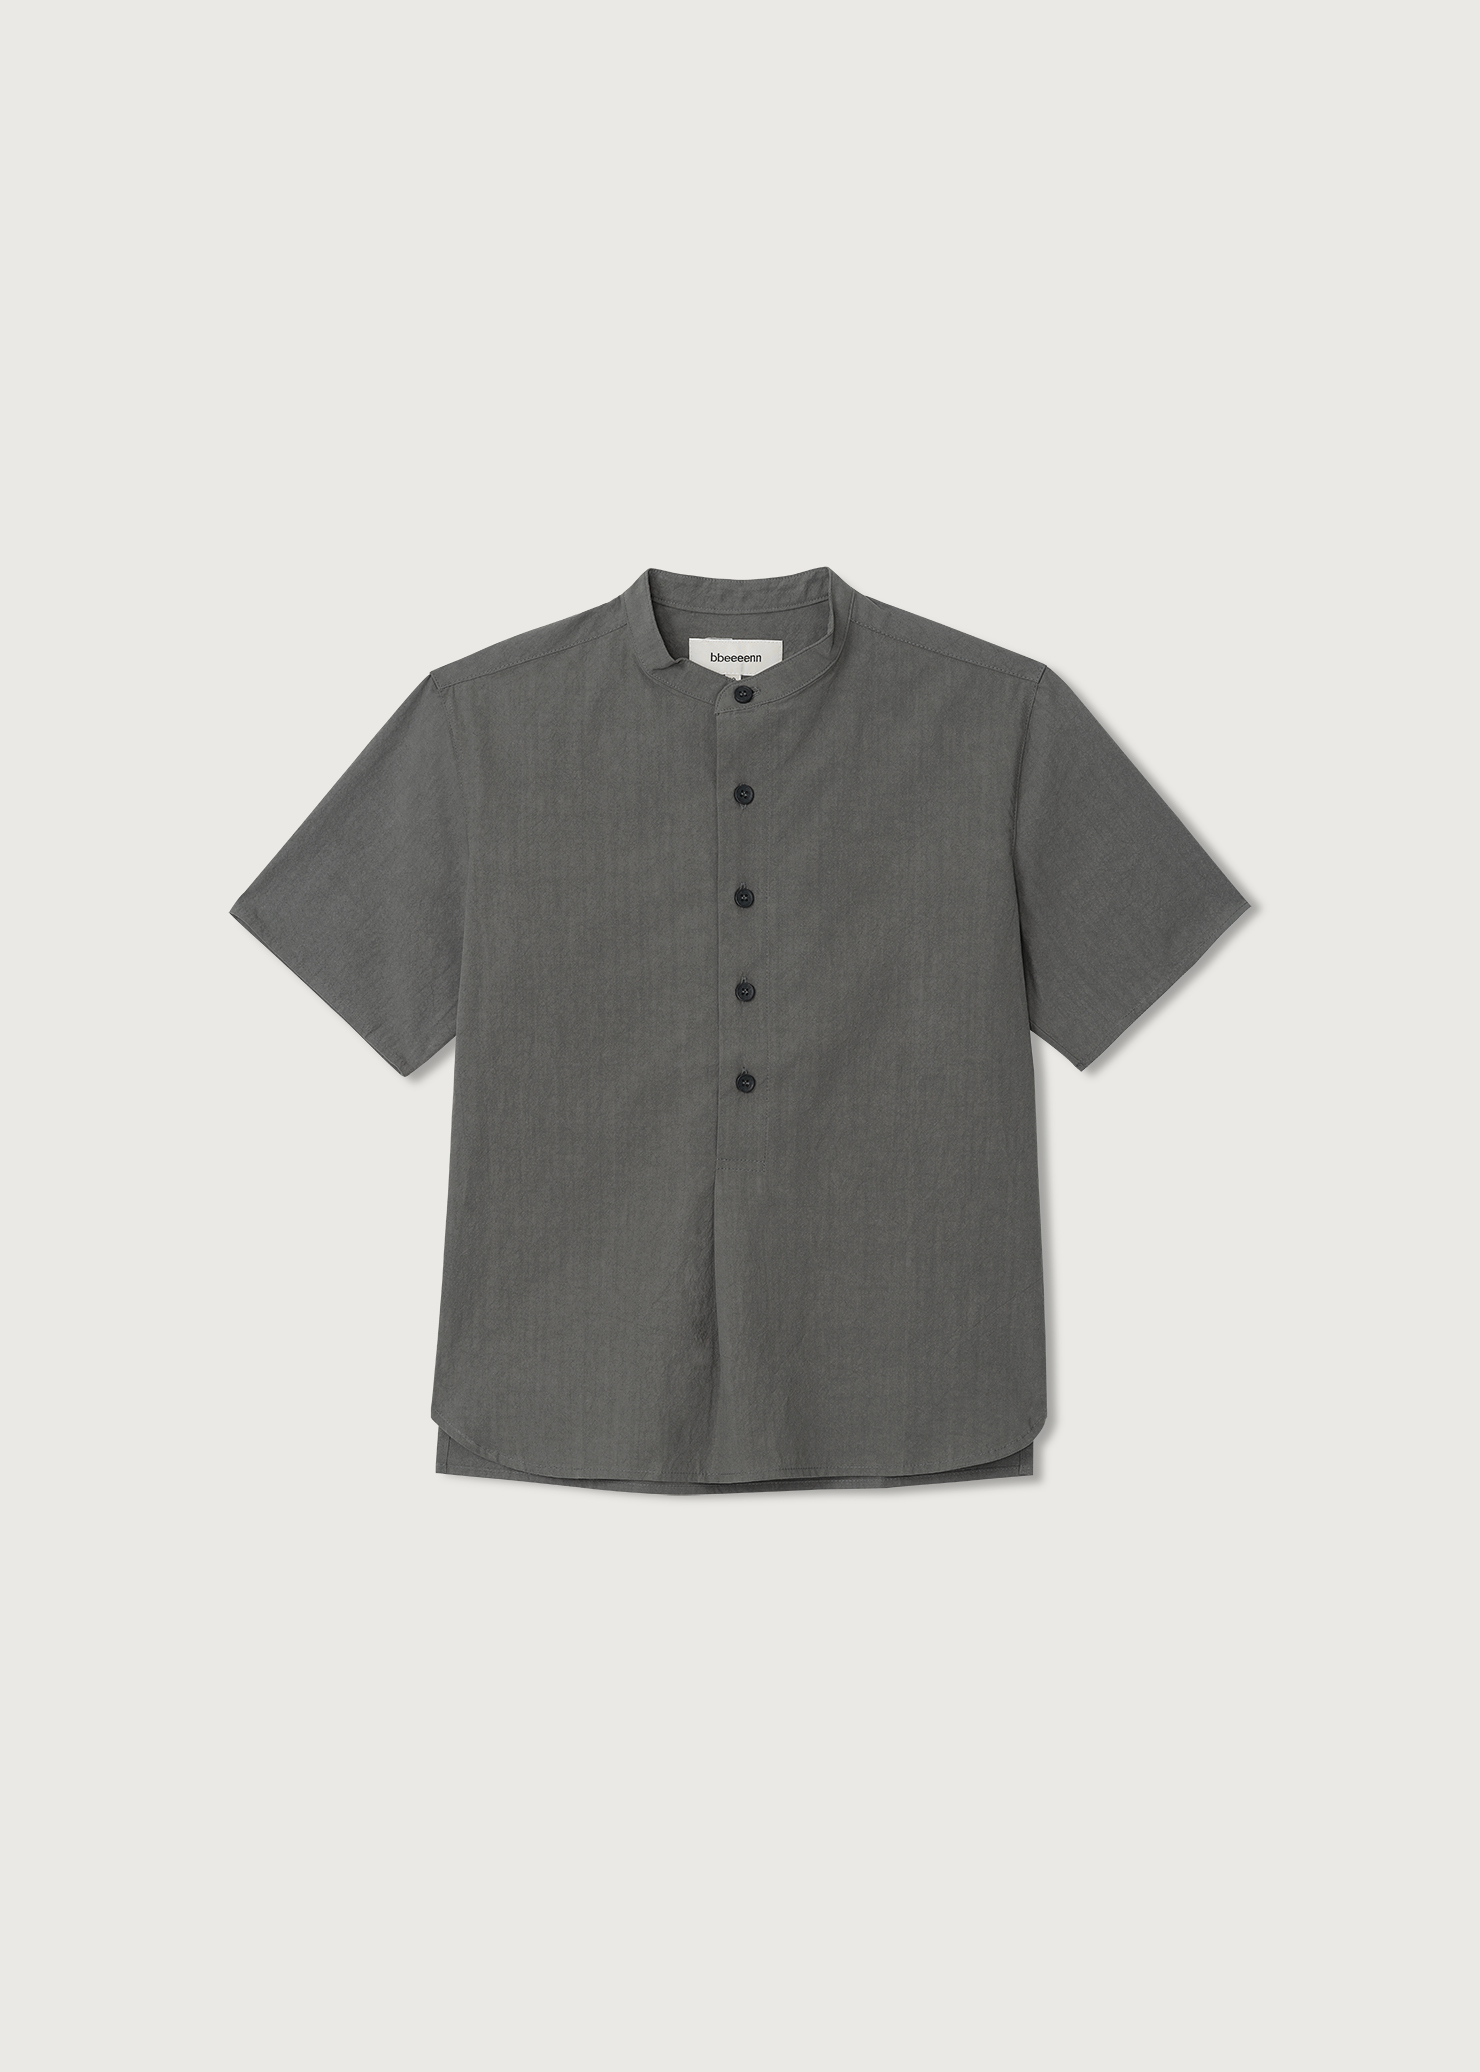 02 Lean Half Shirt_Khaki